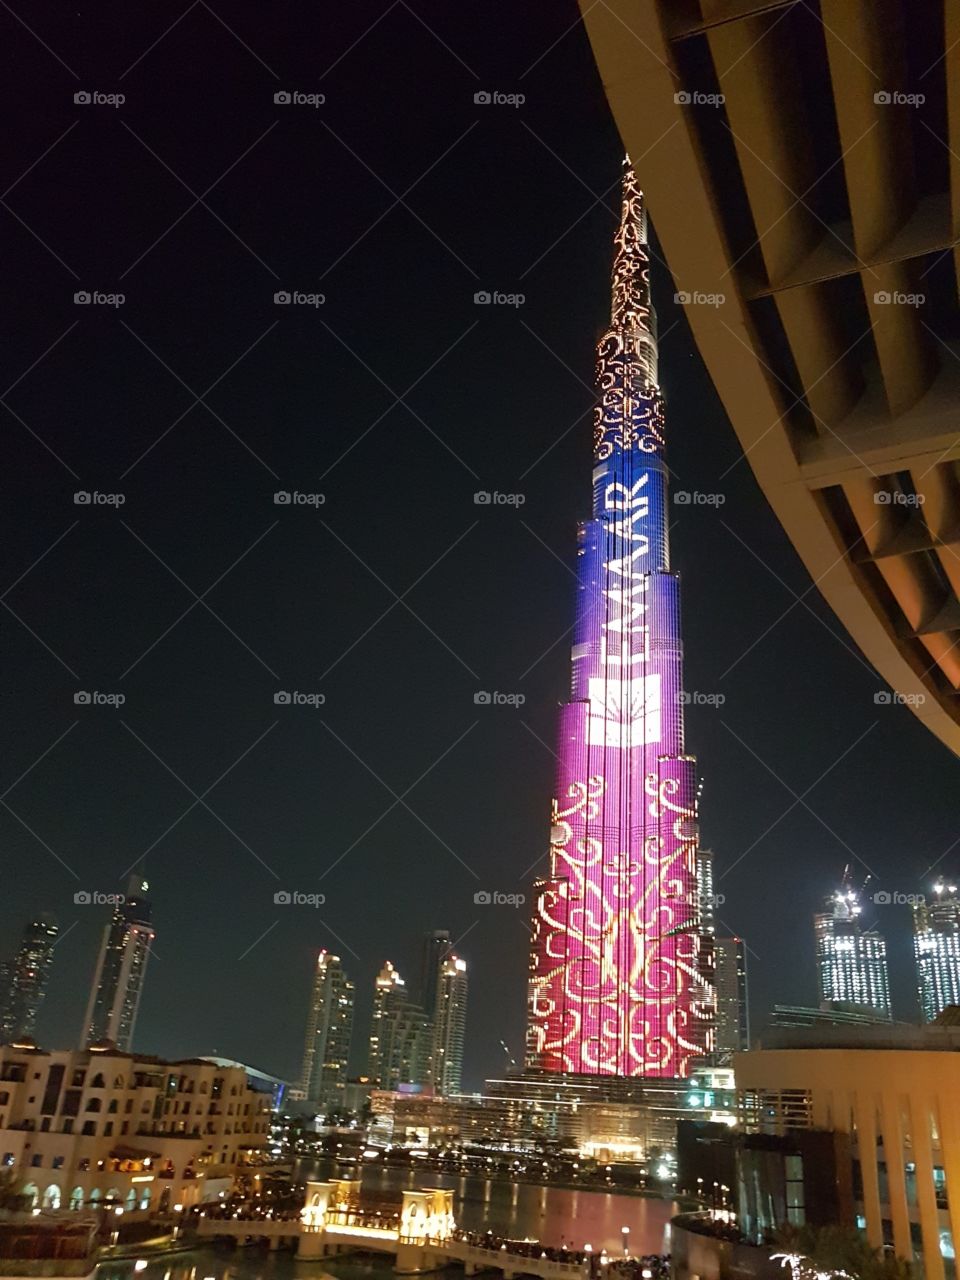 Dubai Mall / Burjkhalifa 🏙